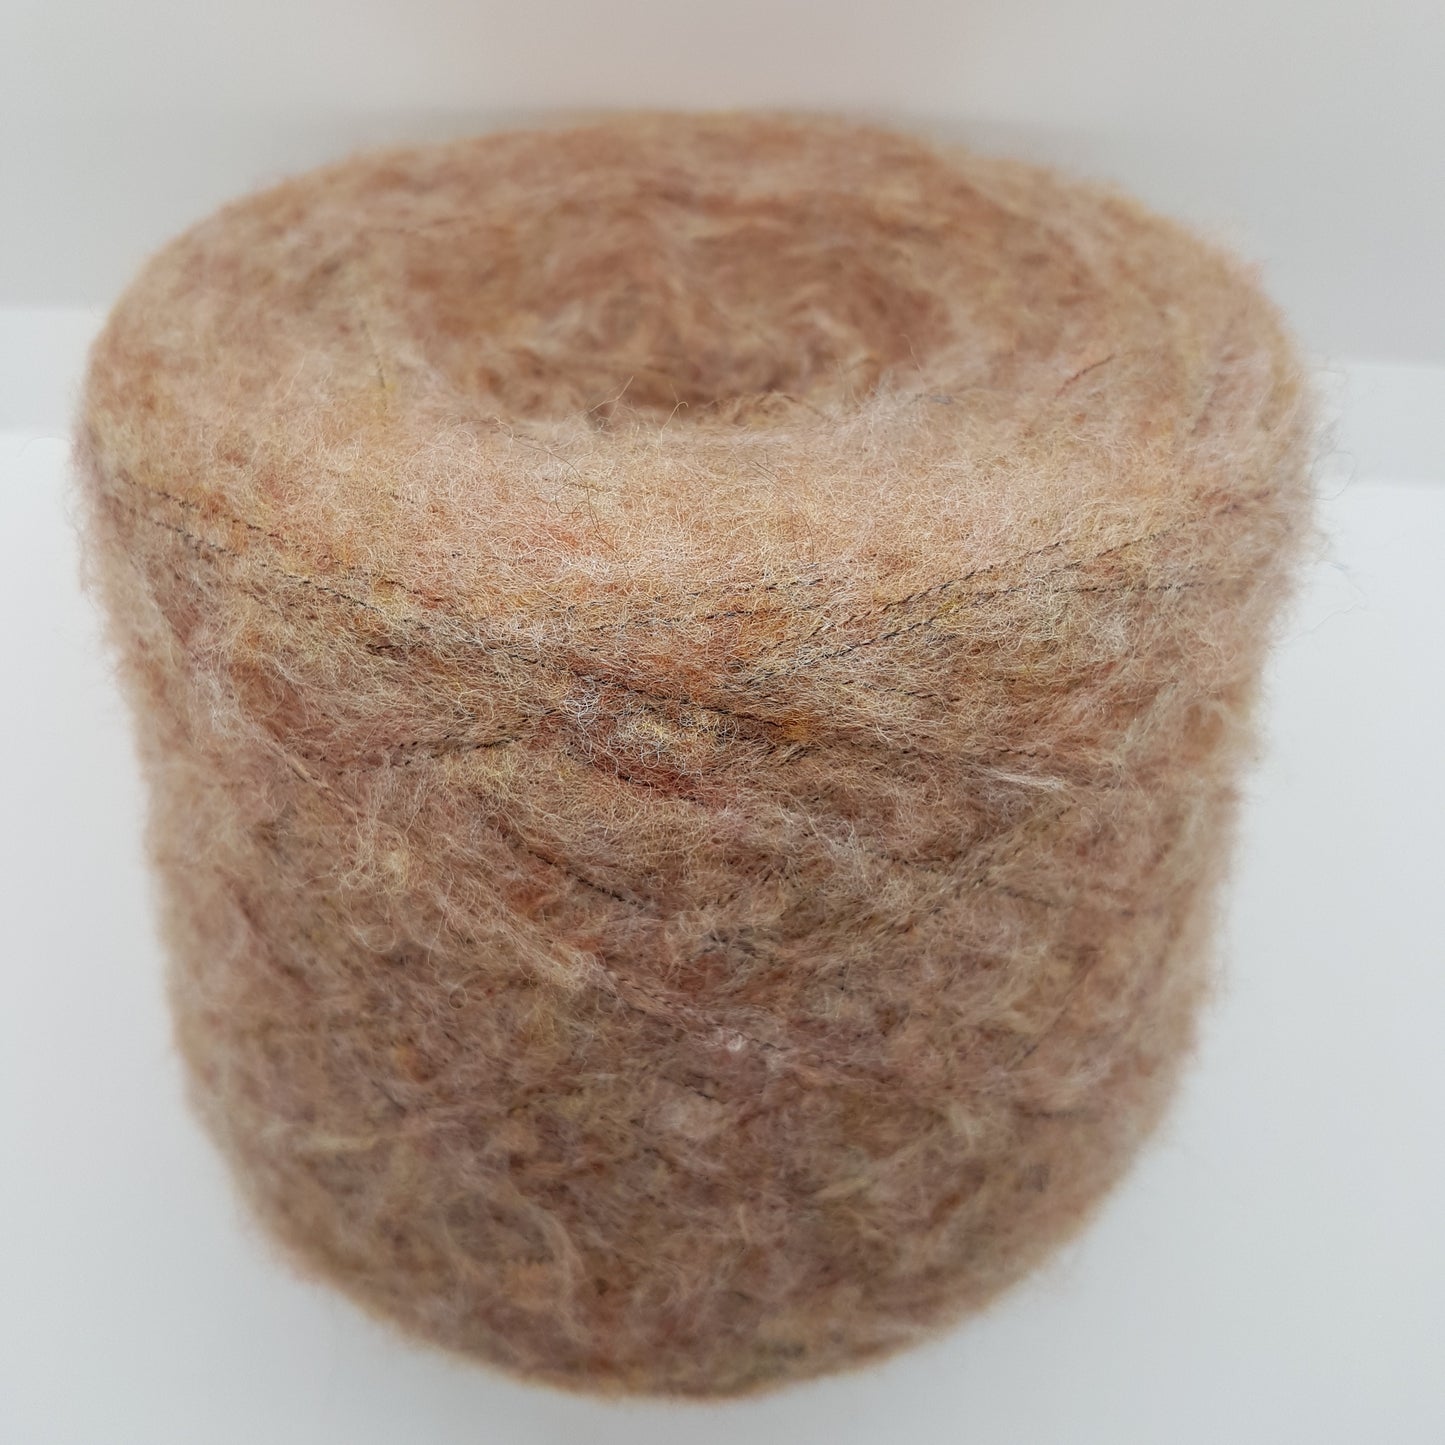 100g-200g Pettinata Sormaid Italienisch abgelegene Wolle sehr weich für Meslange-braune Farbstrickwege N.165